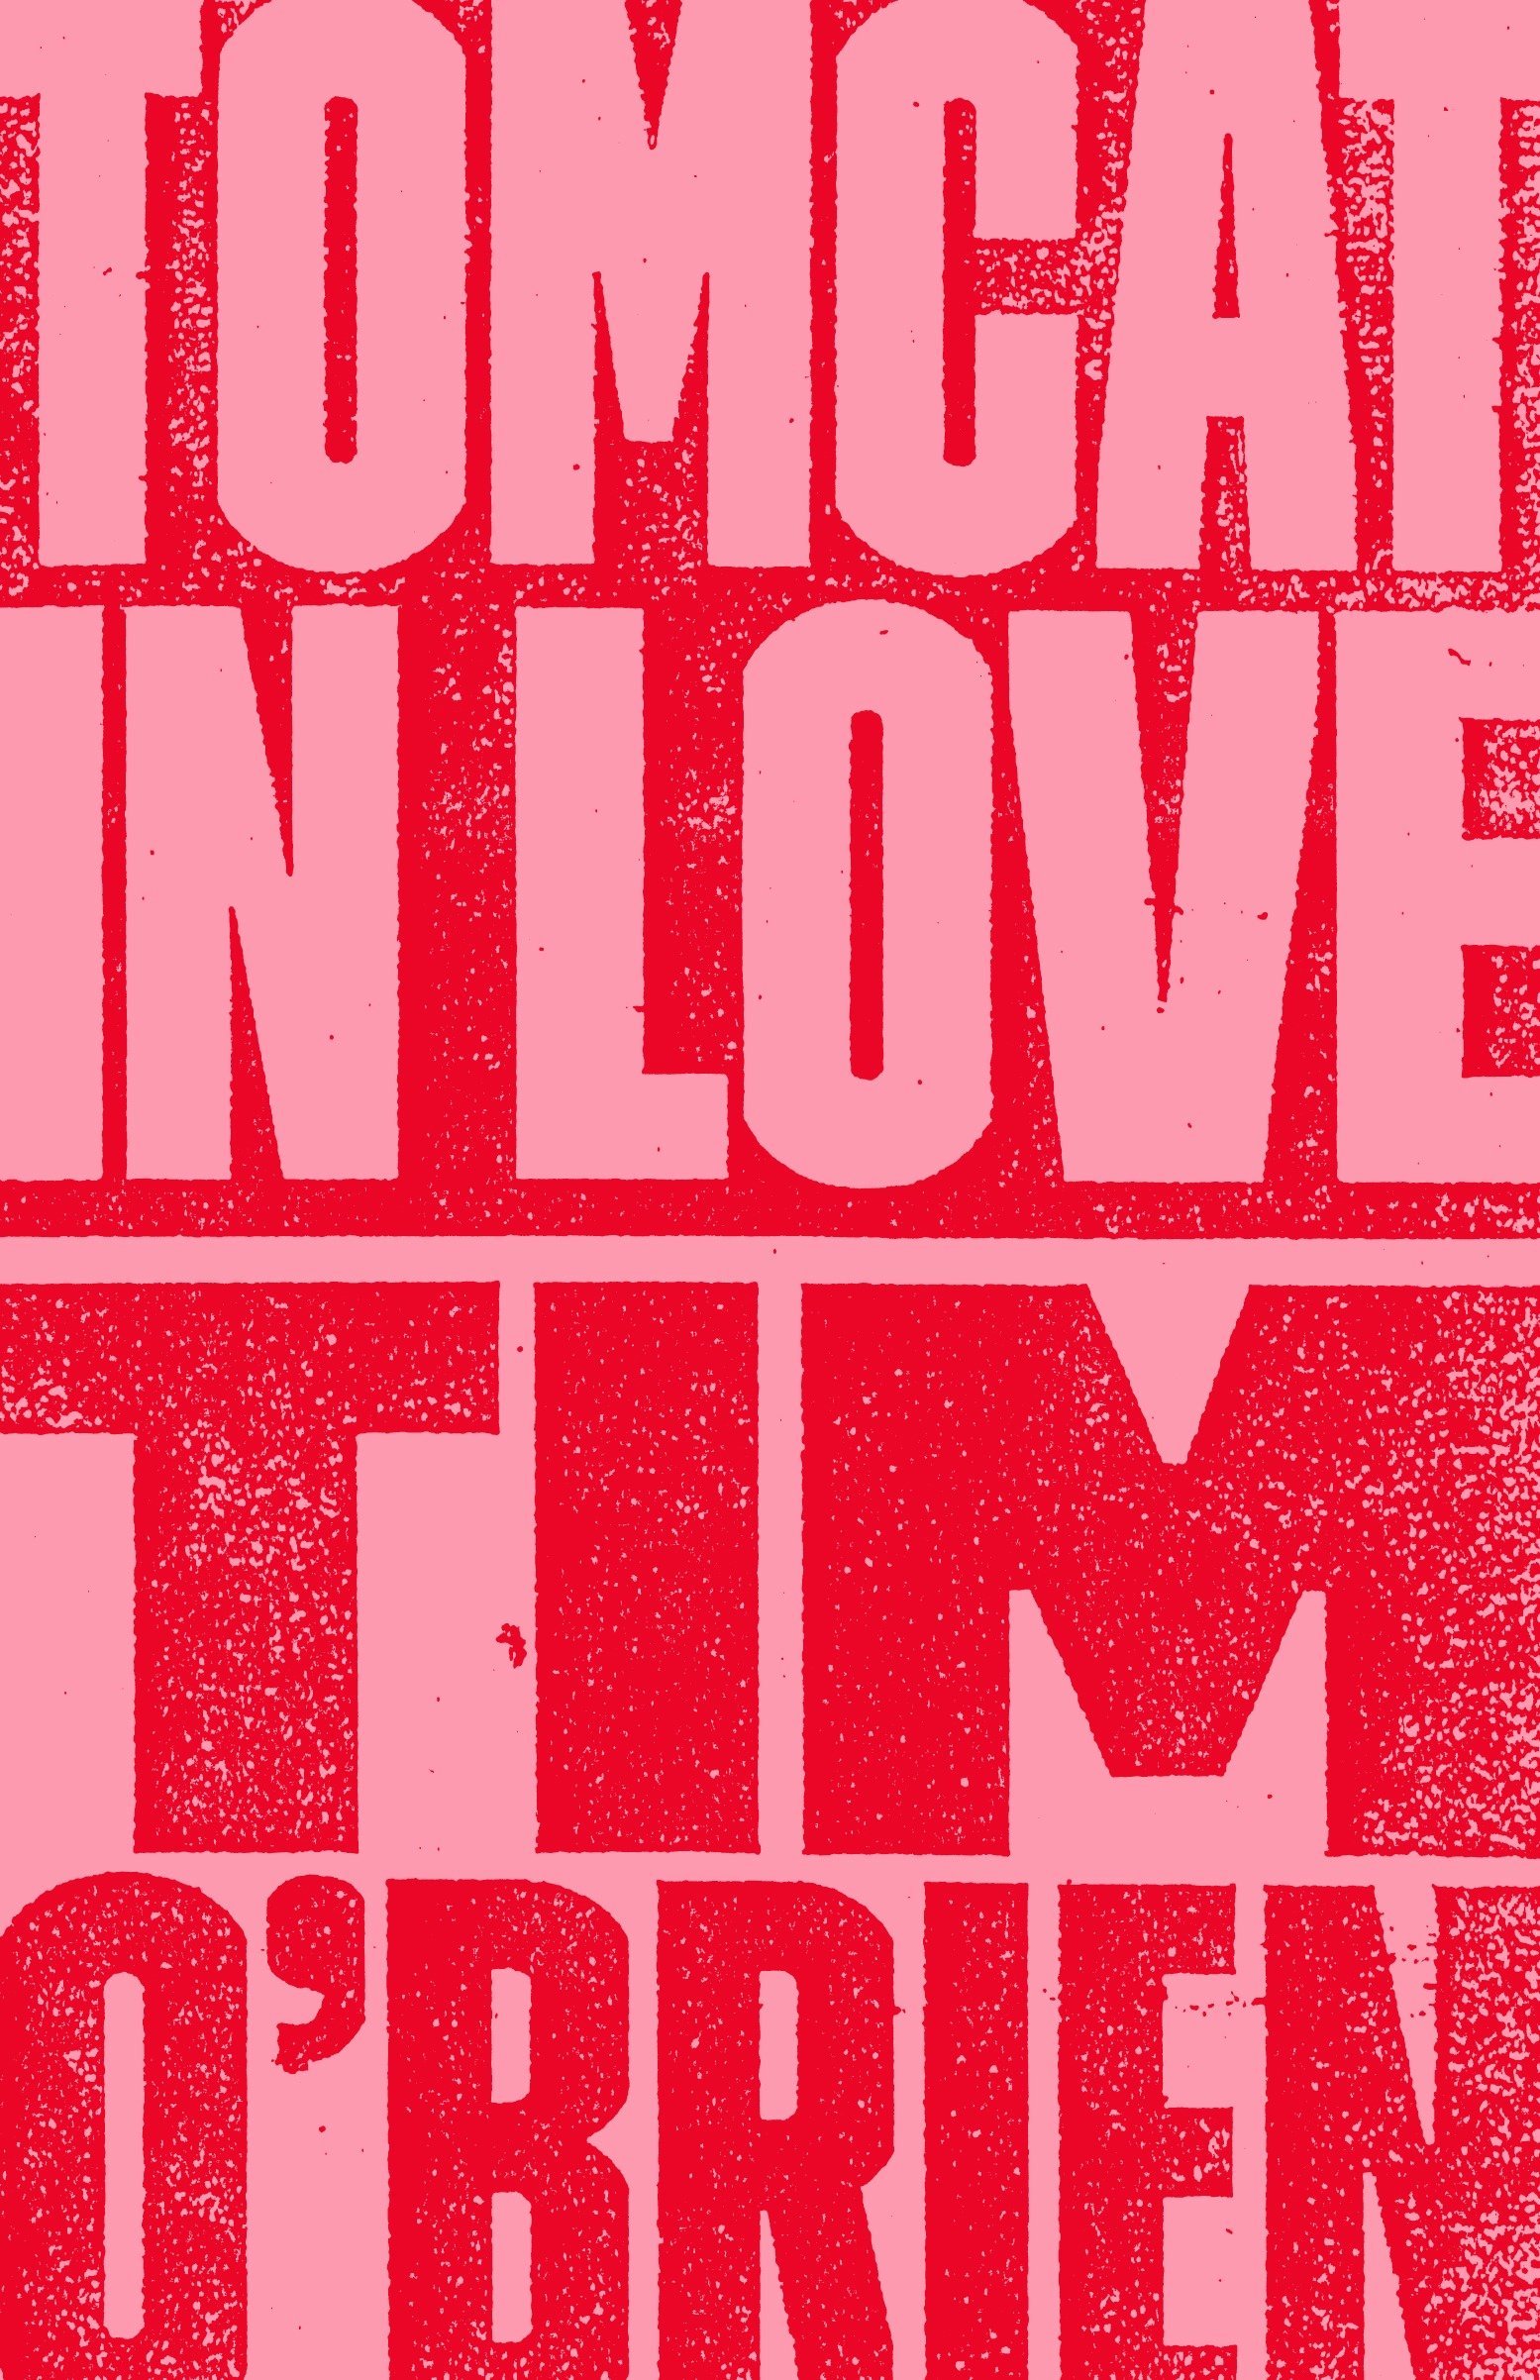 'Tomcat in Love' by Tim O’Brien